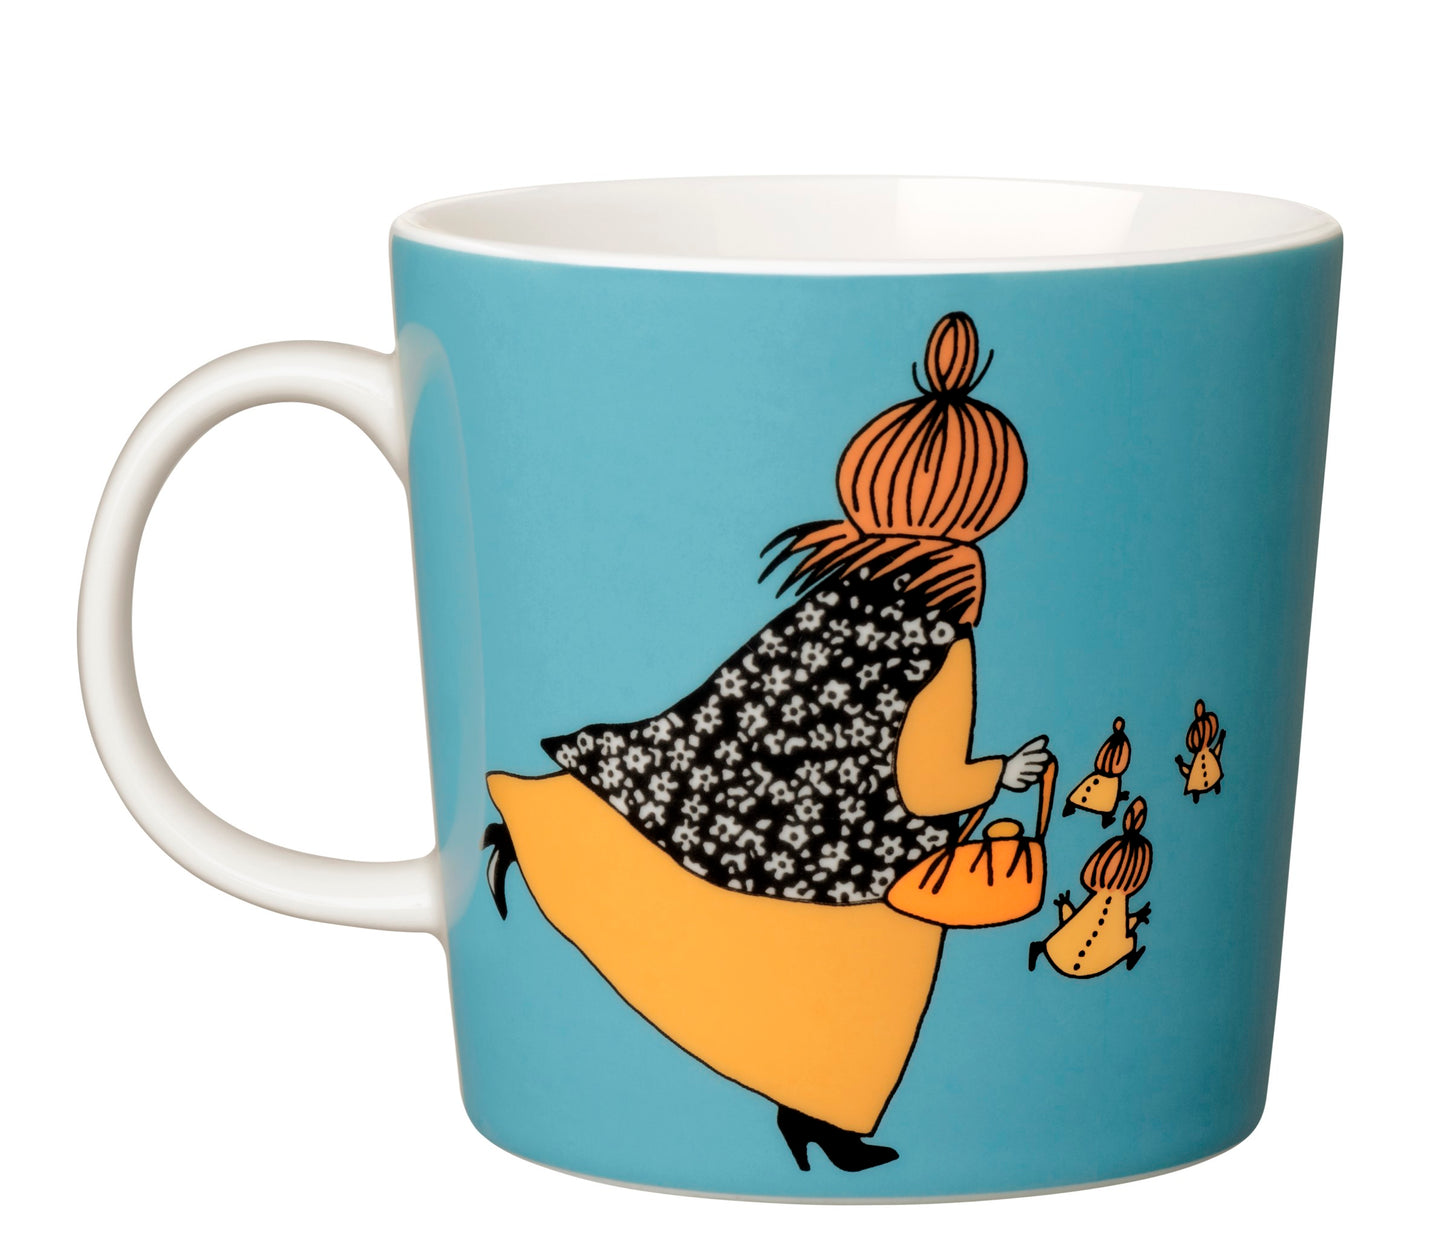 Moomin Mug - Mymbles Mother